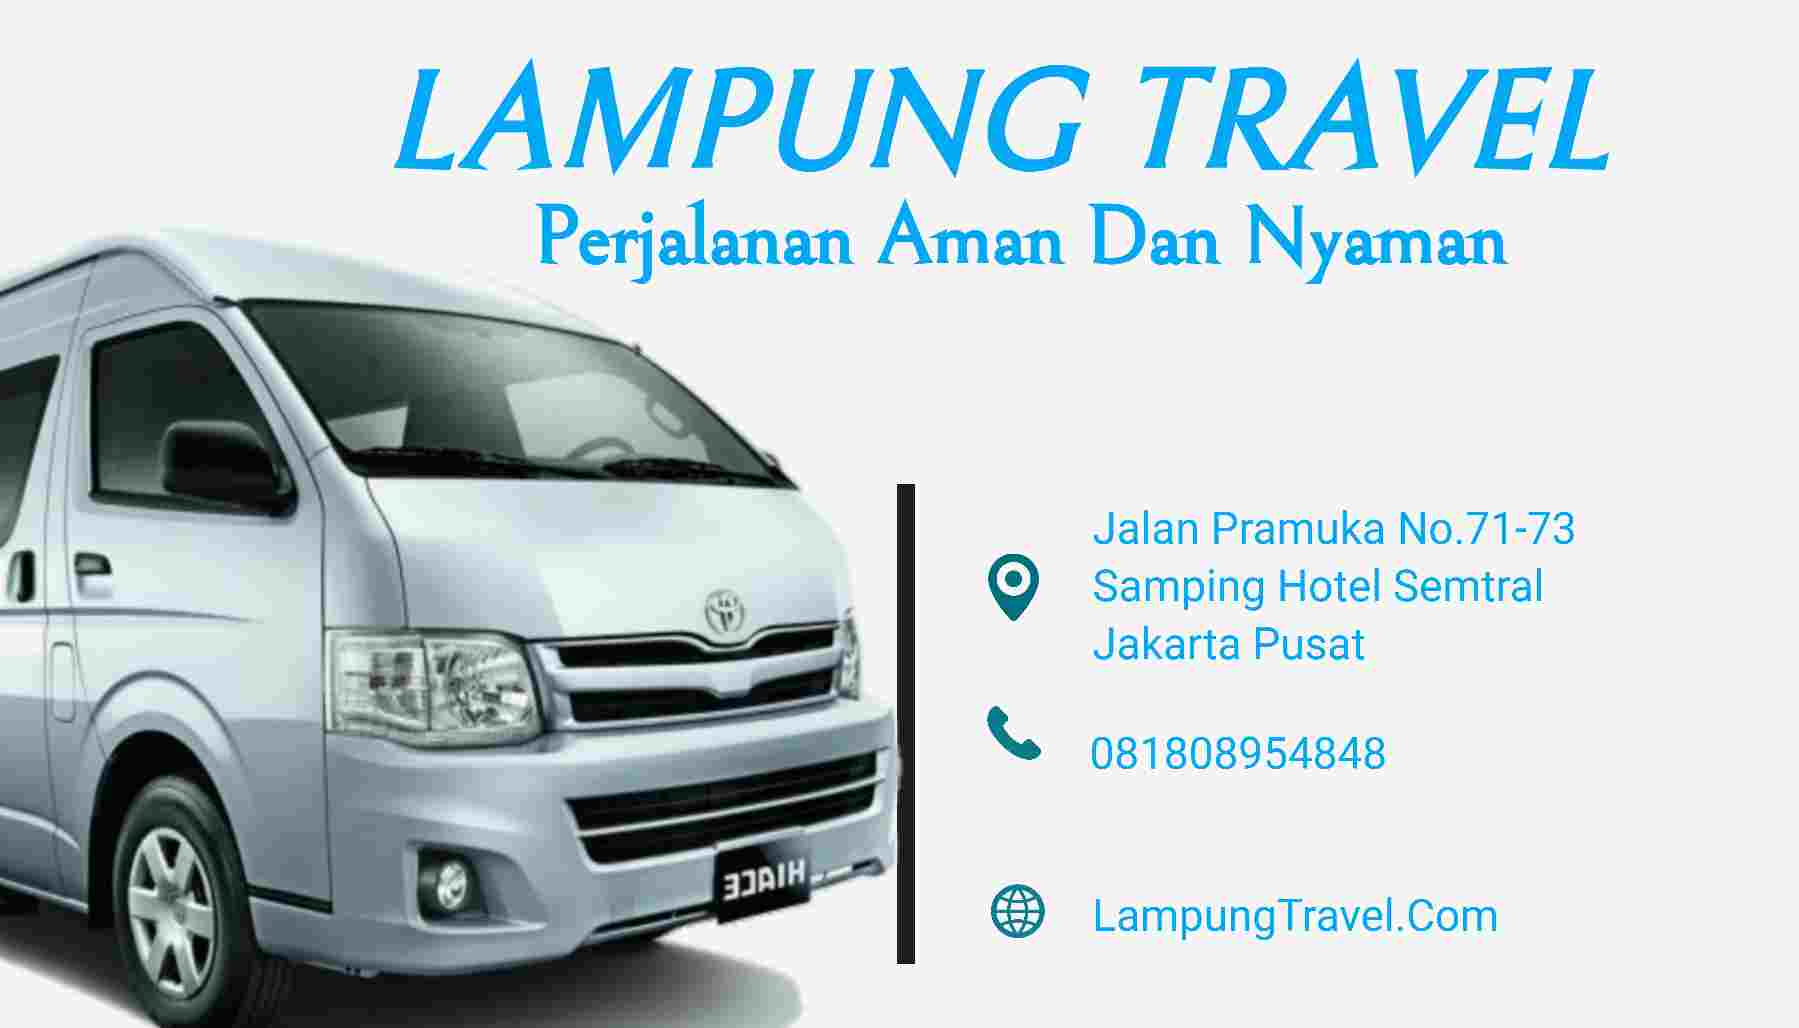 Travel Tangerang Pringsewu Branti Lampung